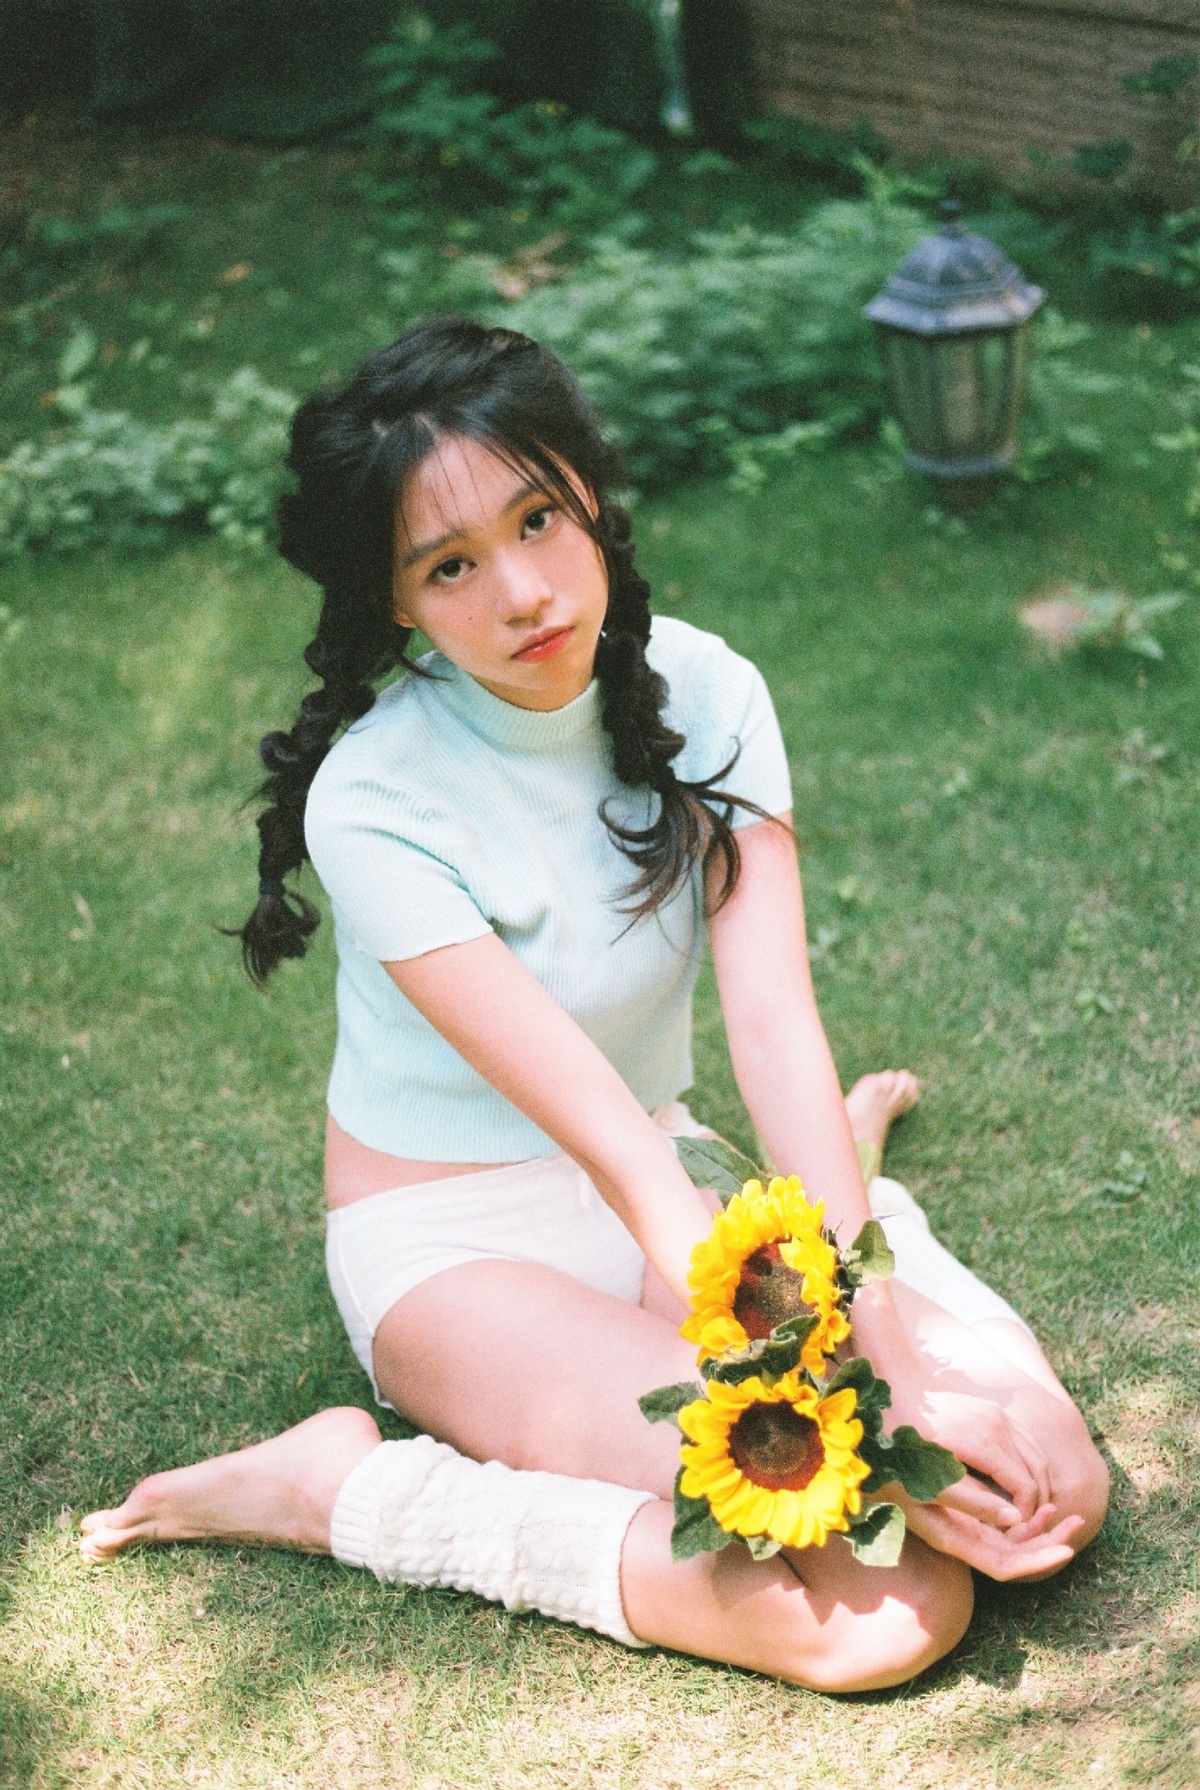 一个小女孩坐在后院草地上 草地上有一朵向日葵